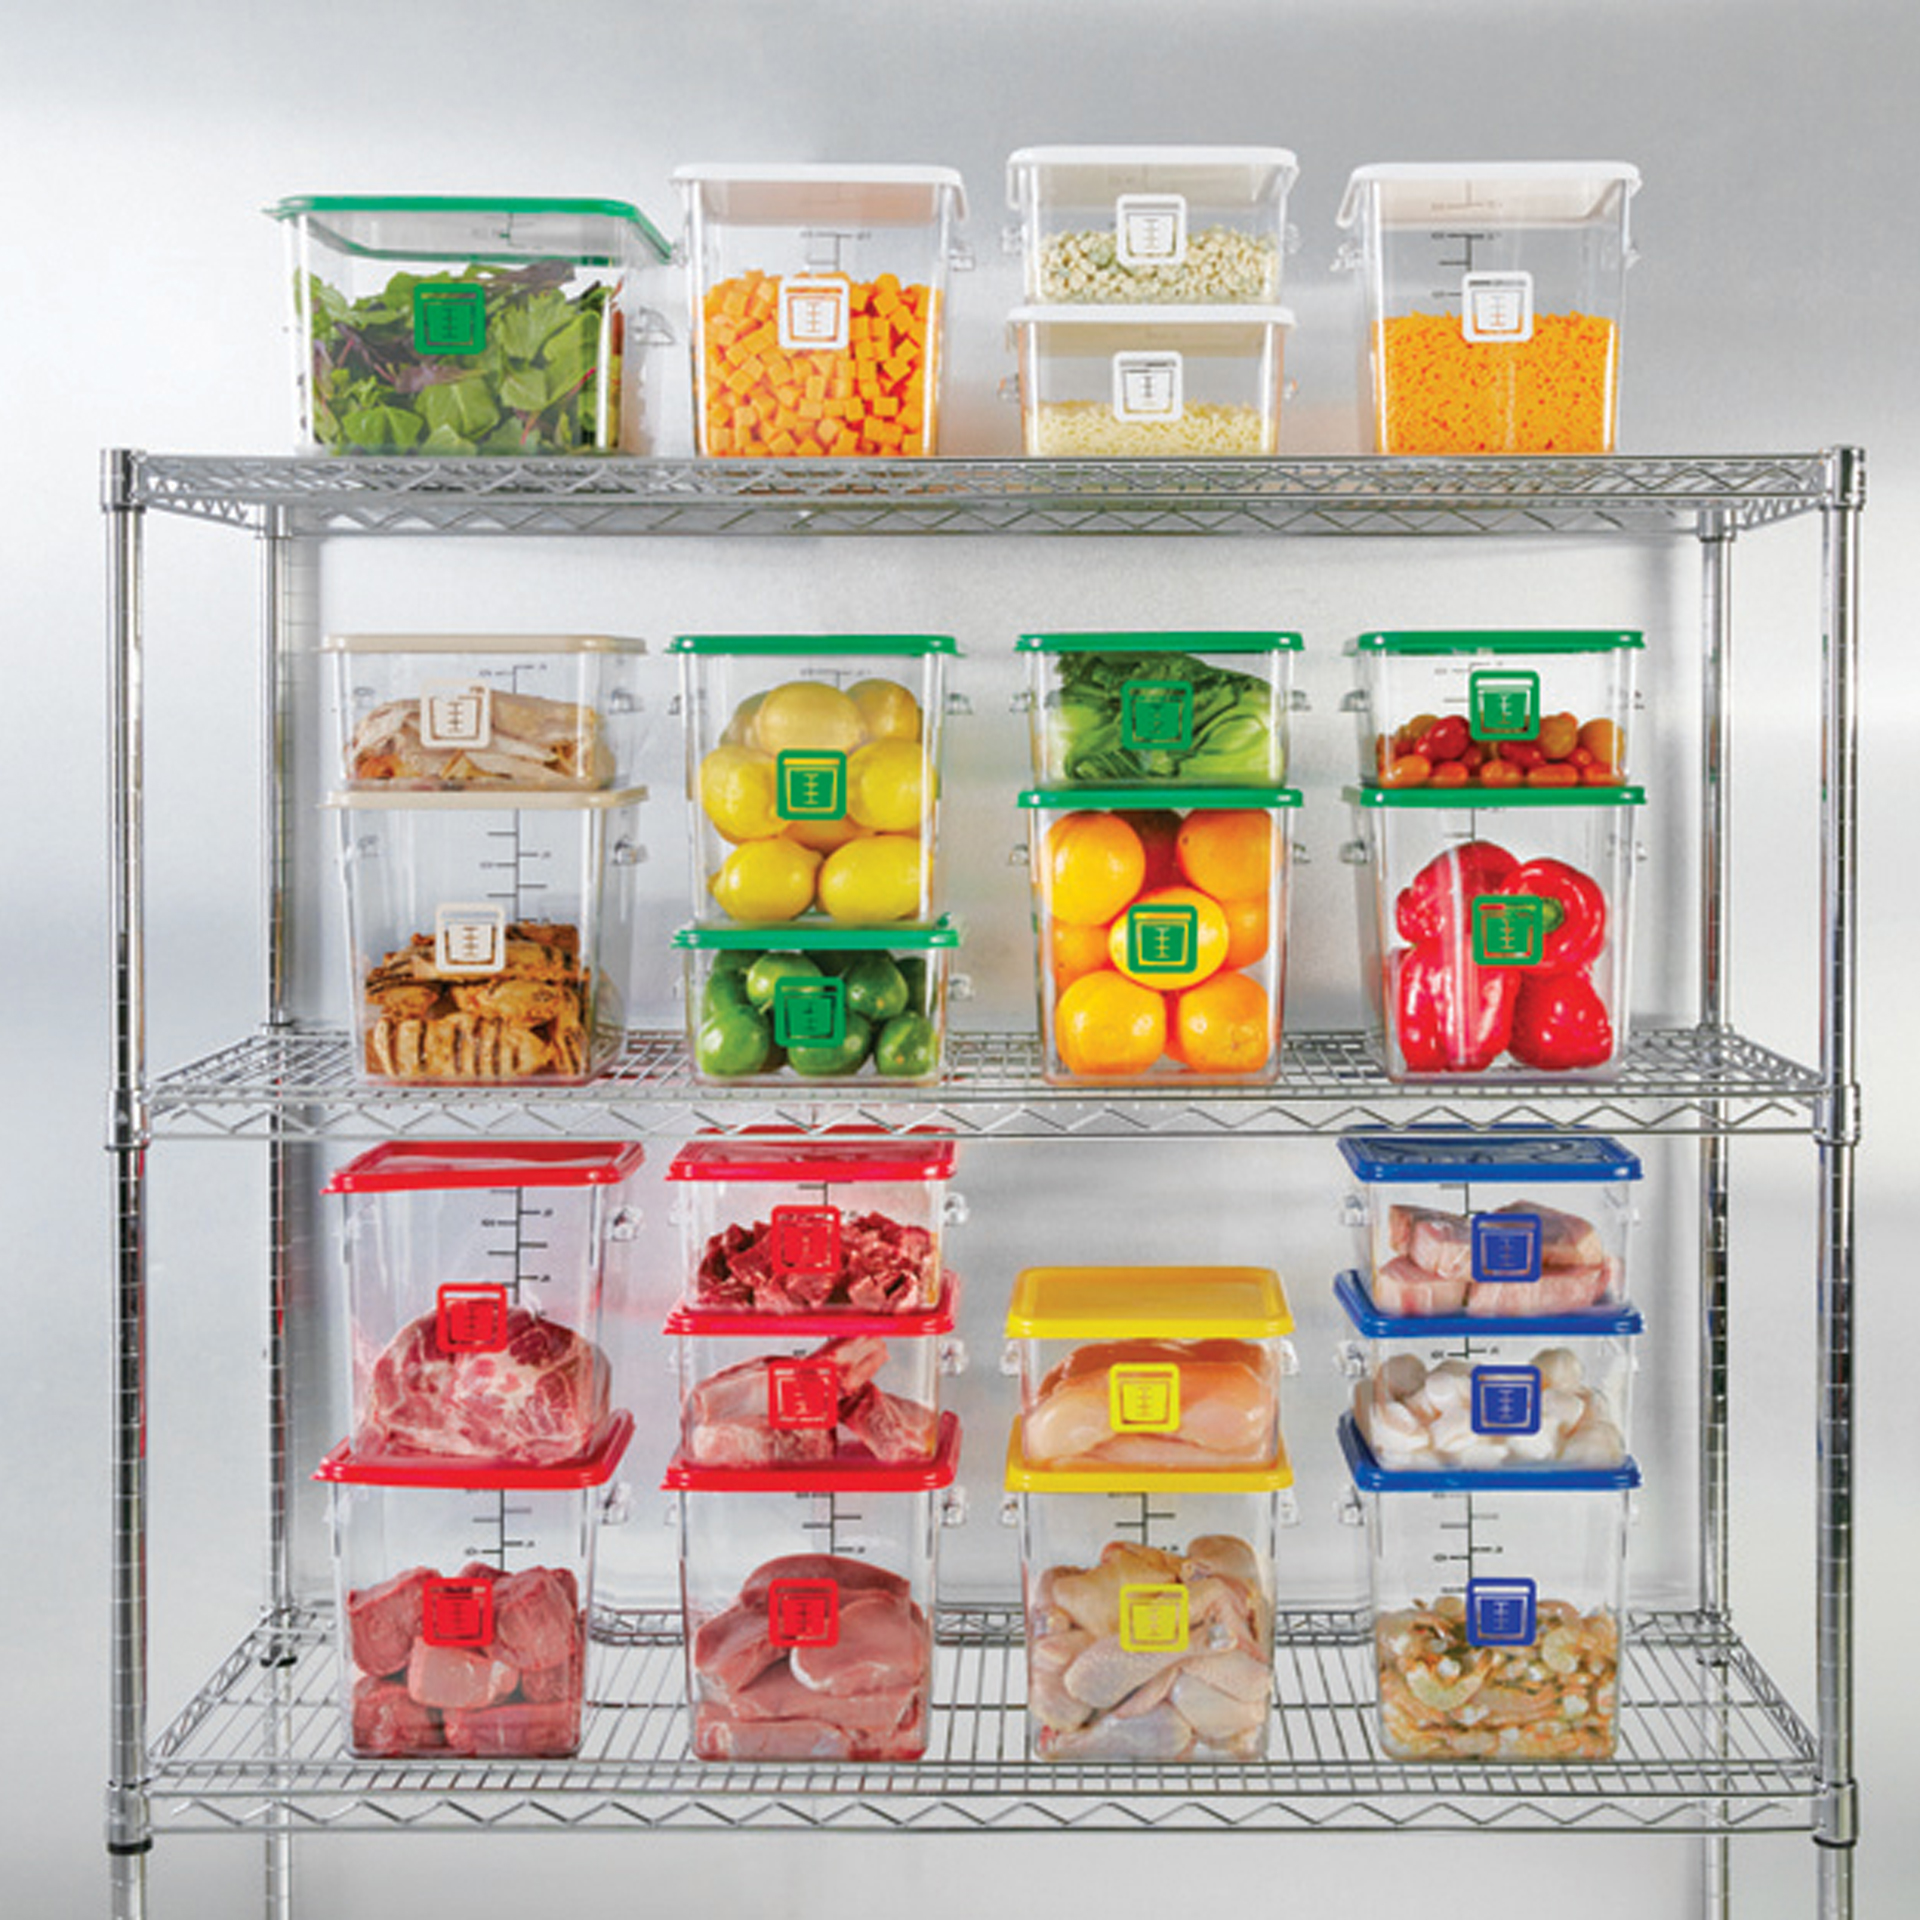 กล่องเก็บวัตถุดิบอาหารสี่เหลี่ยม Color-Coded Square Container Clear ขนาด 8 qt สีเขียว